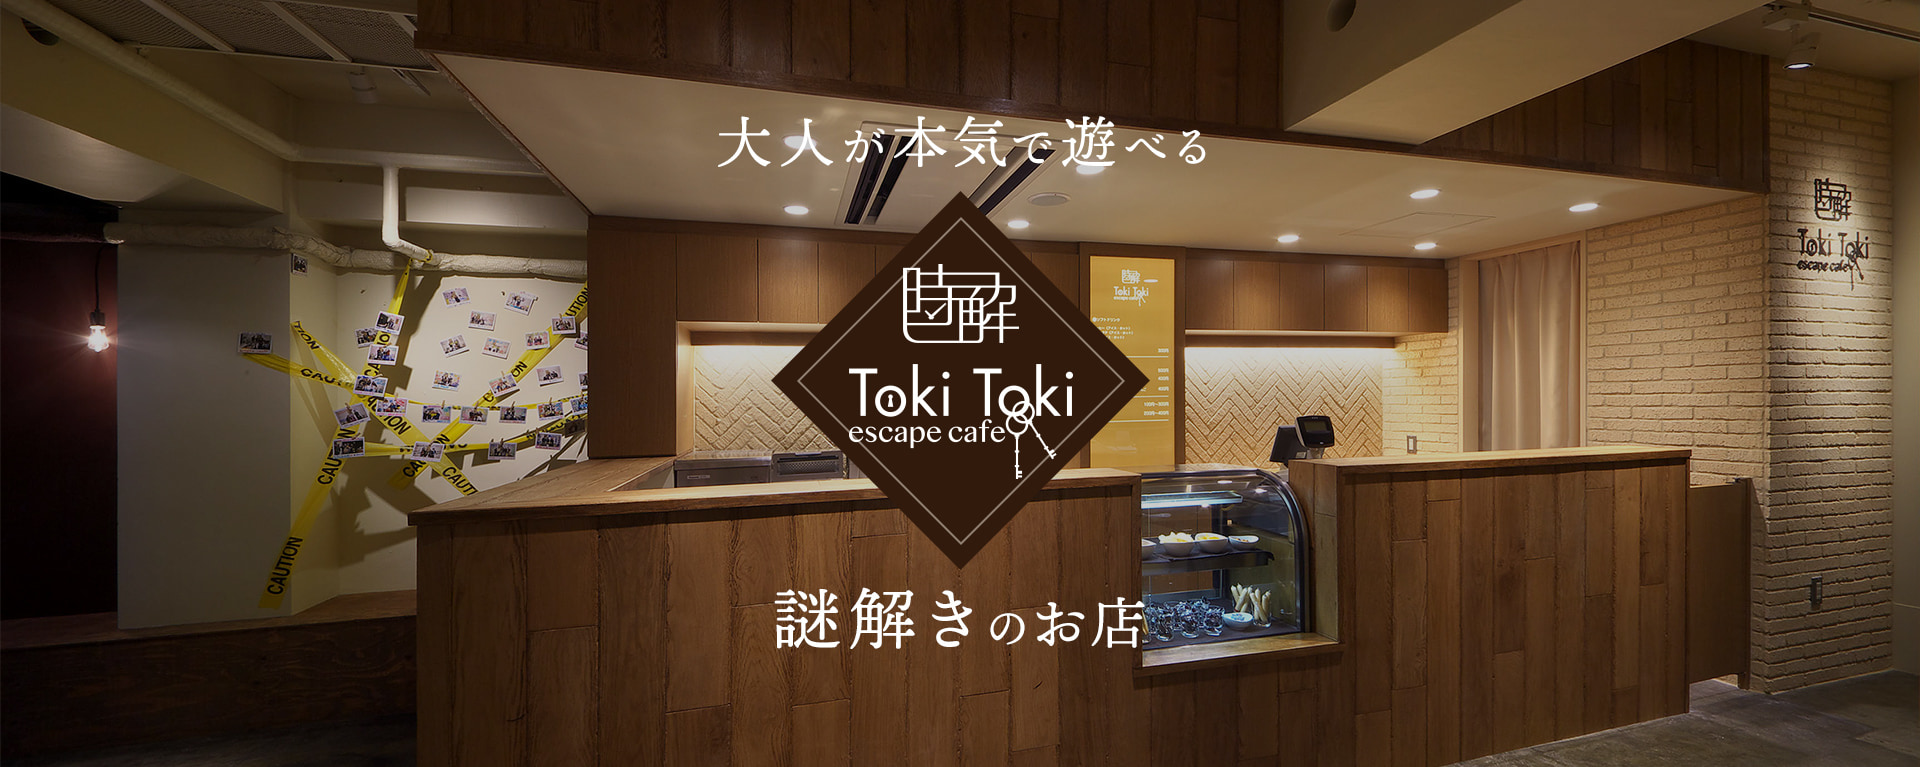 大人が本気で遊べる謎解きのお店「時解 TokiToki」